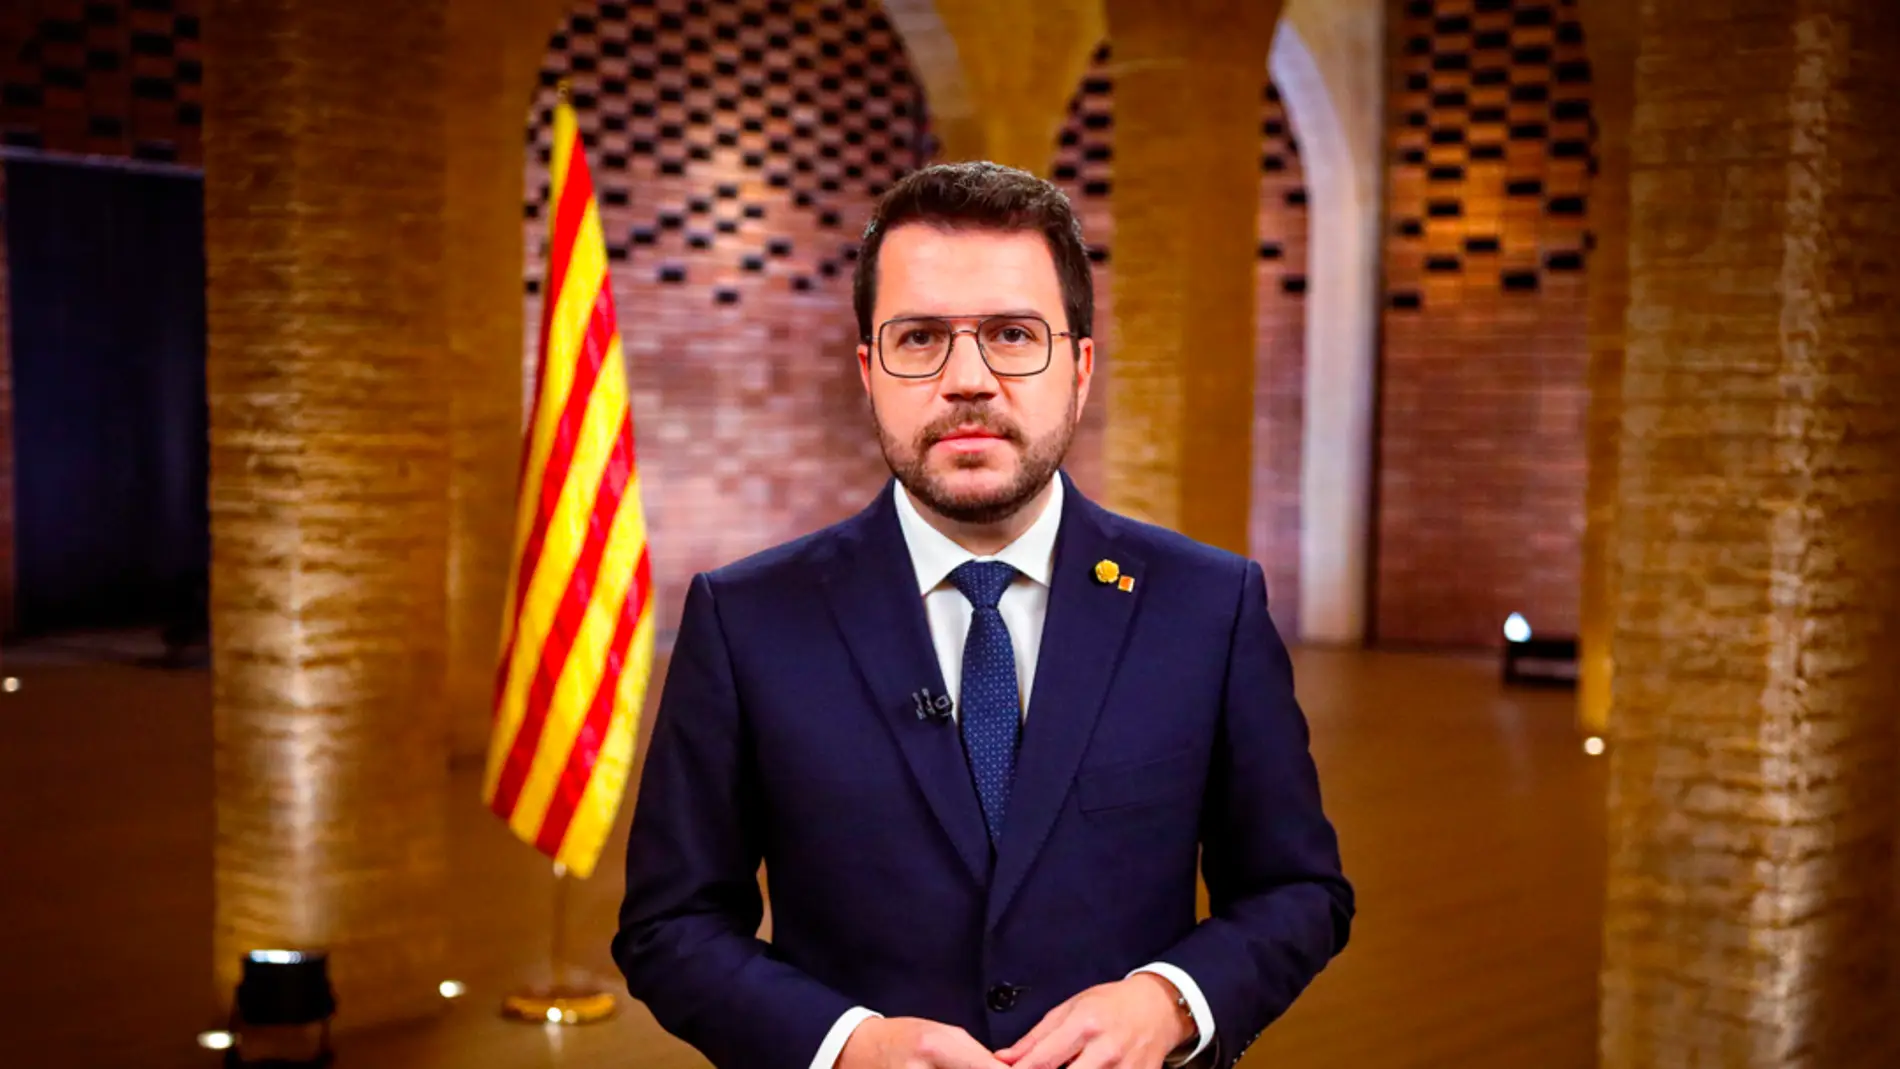 Aragonès reitera su objetivo de negociar con el Estado la celebración de un referéndum de independencia